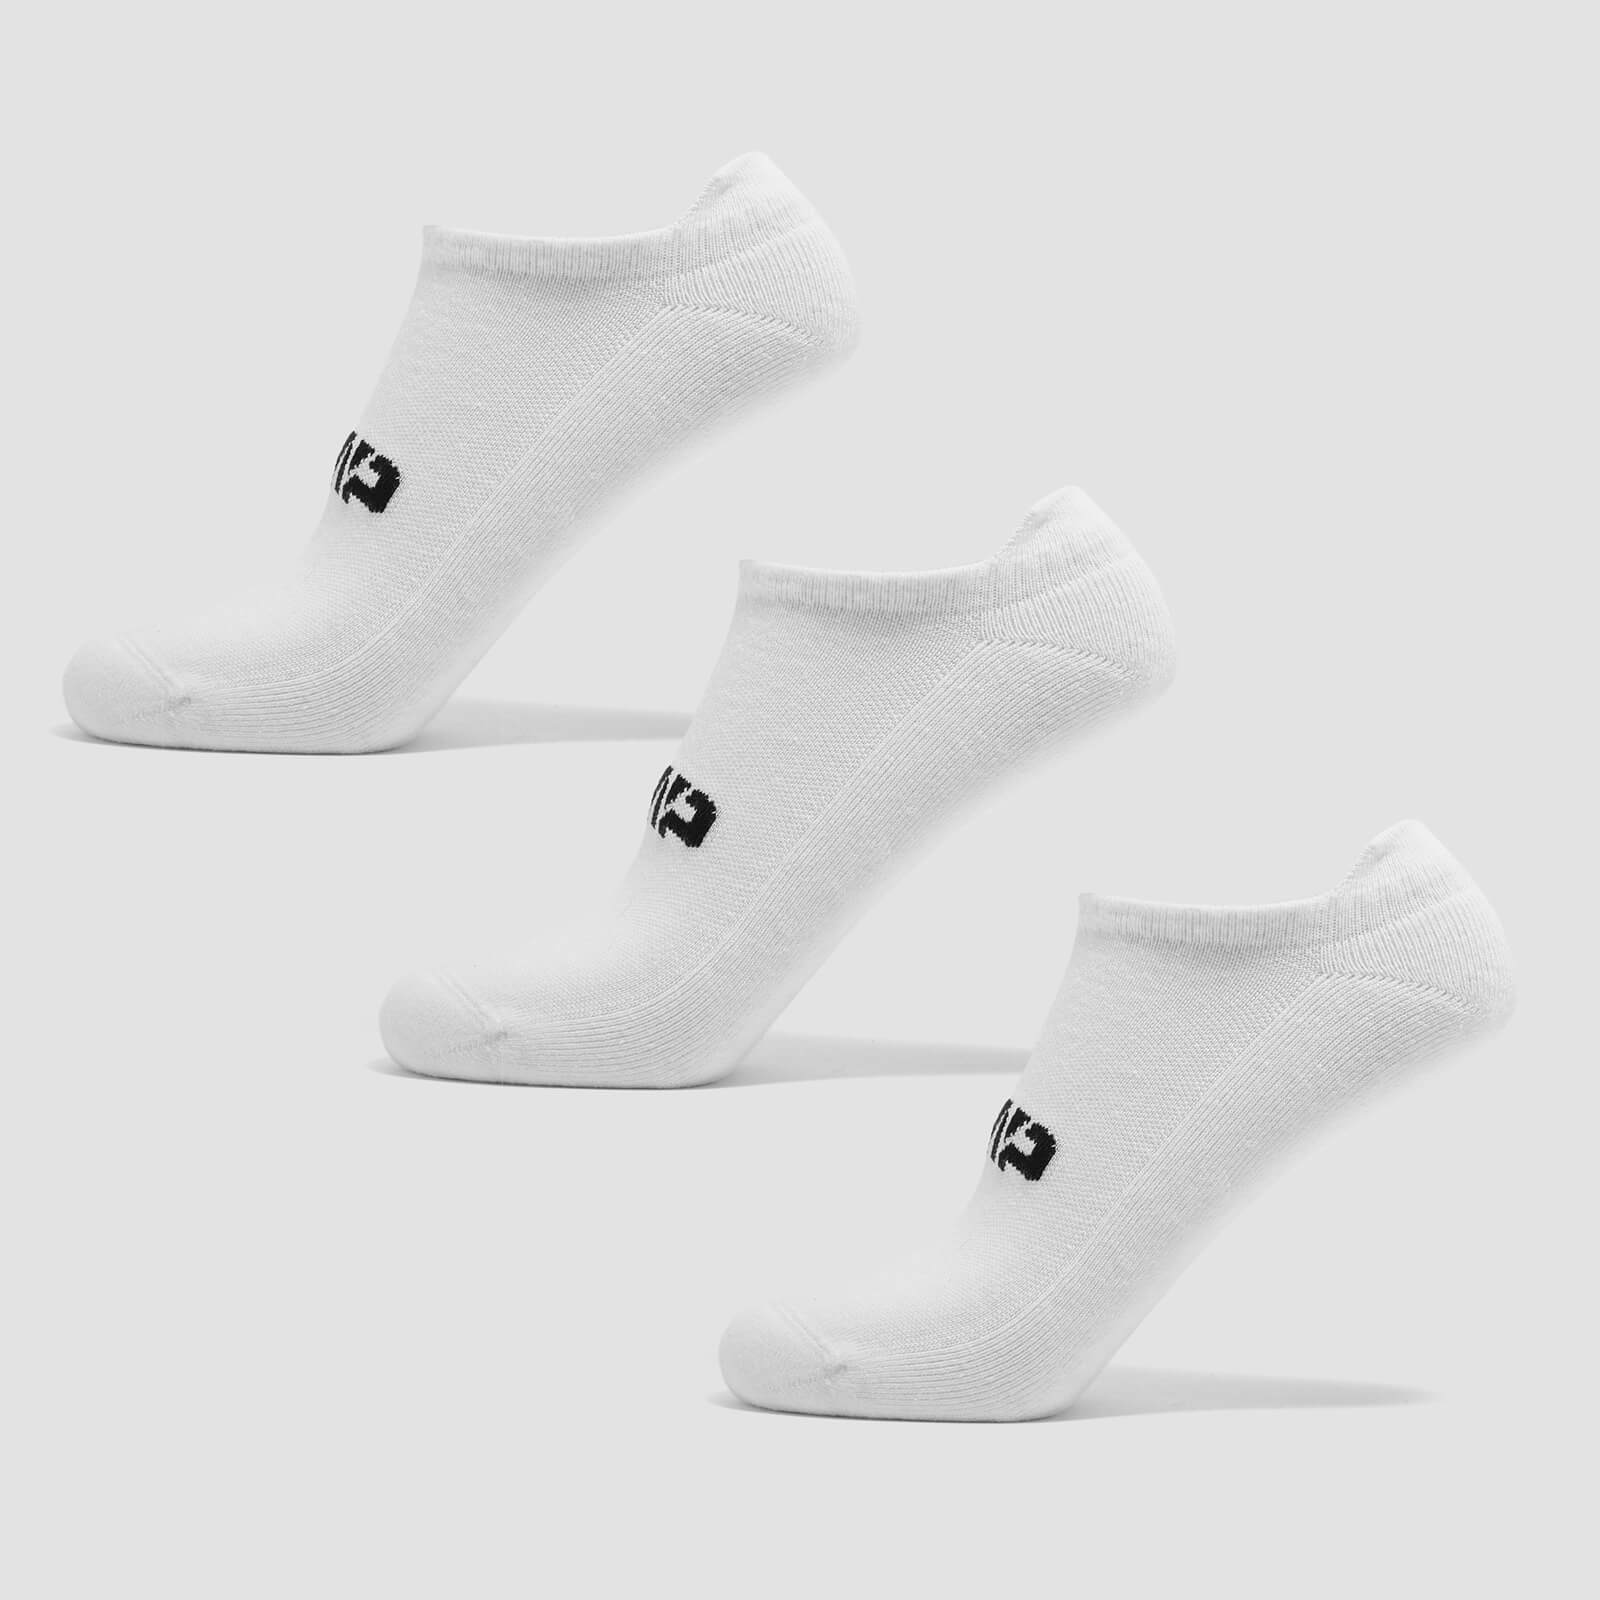 Chaussettes d’entraînement unisexes MP (lot de 3 paires) – Blanc - UK 12-14